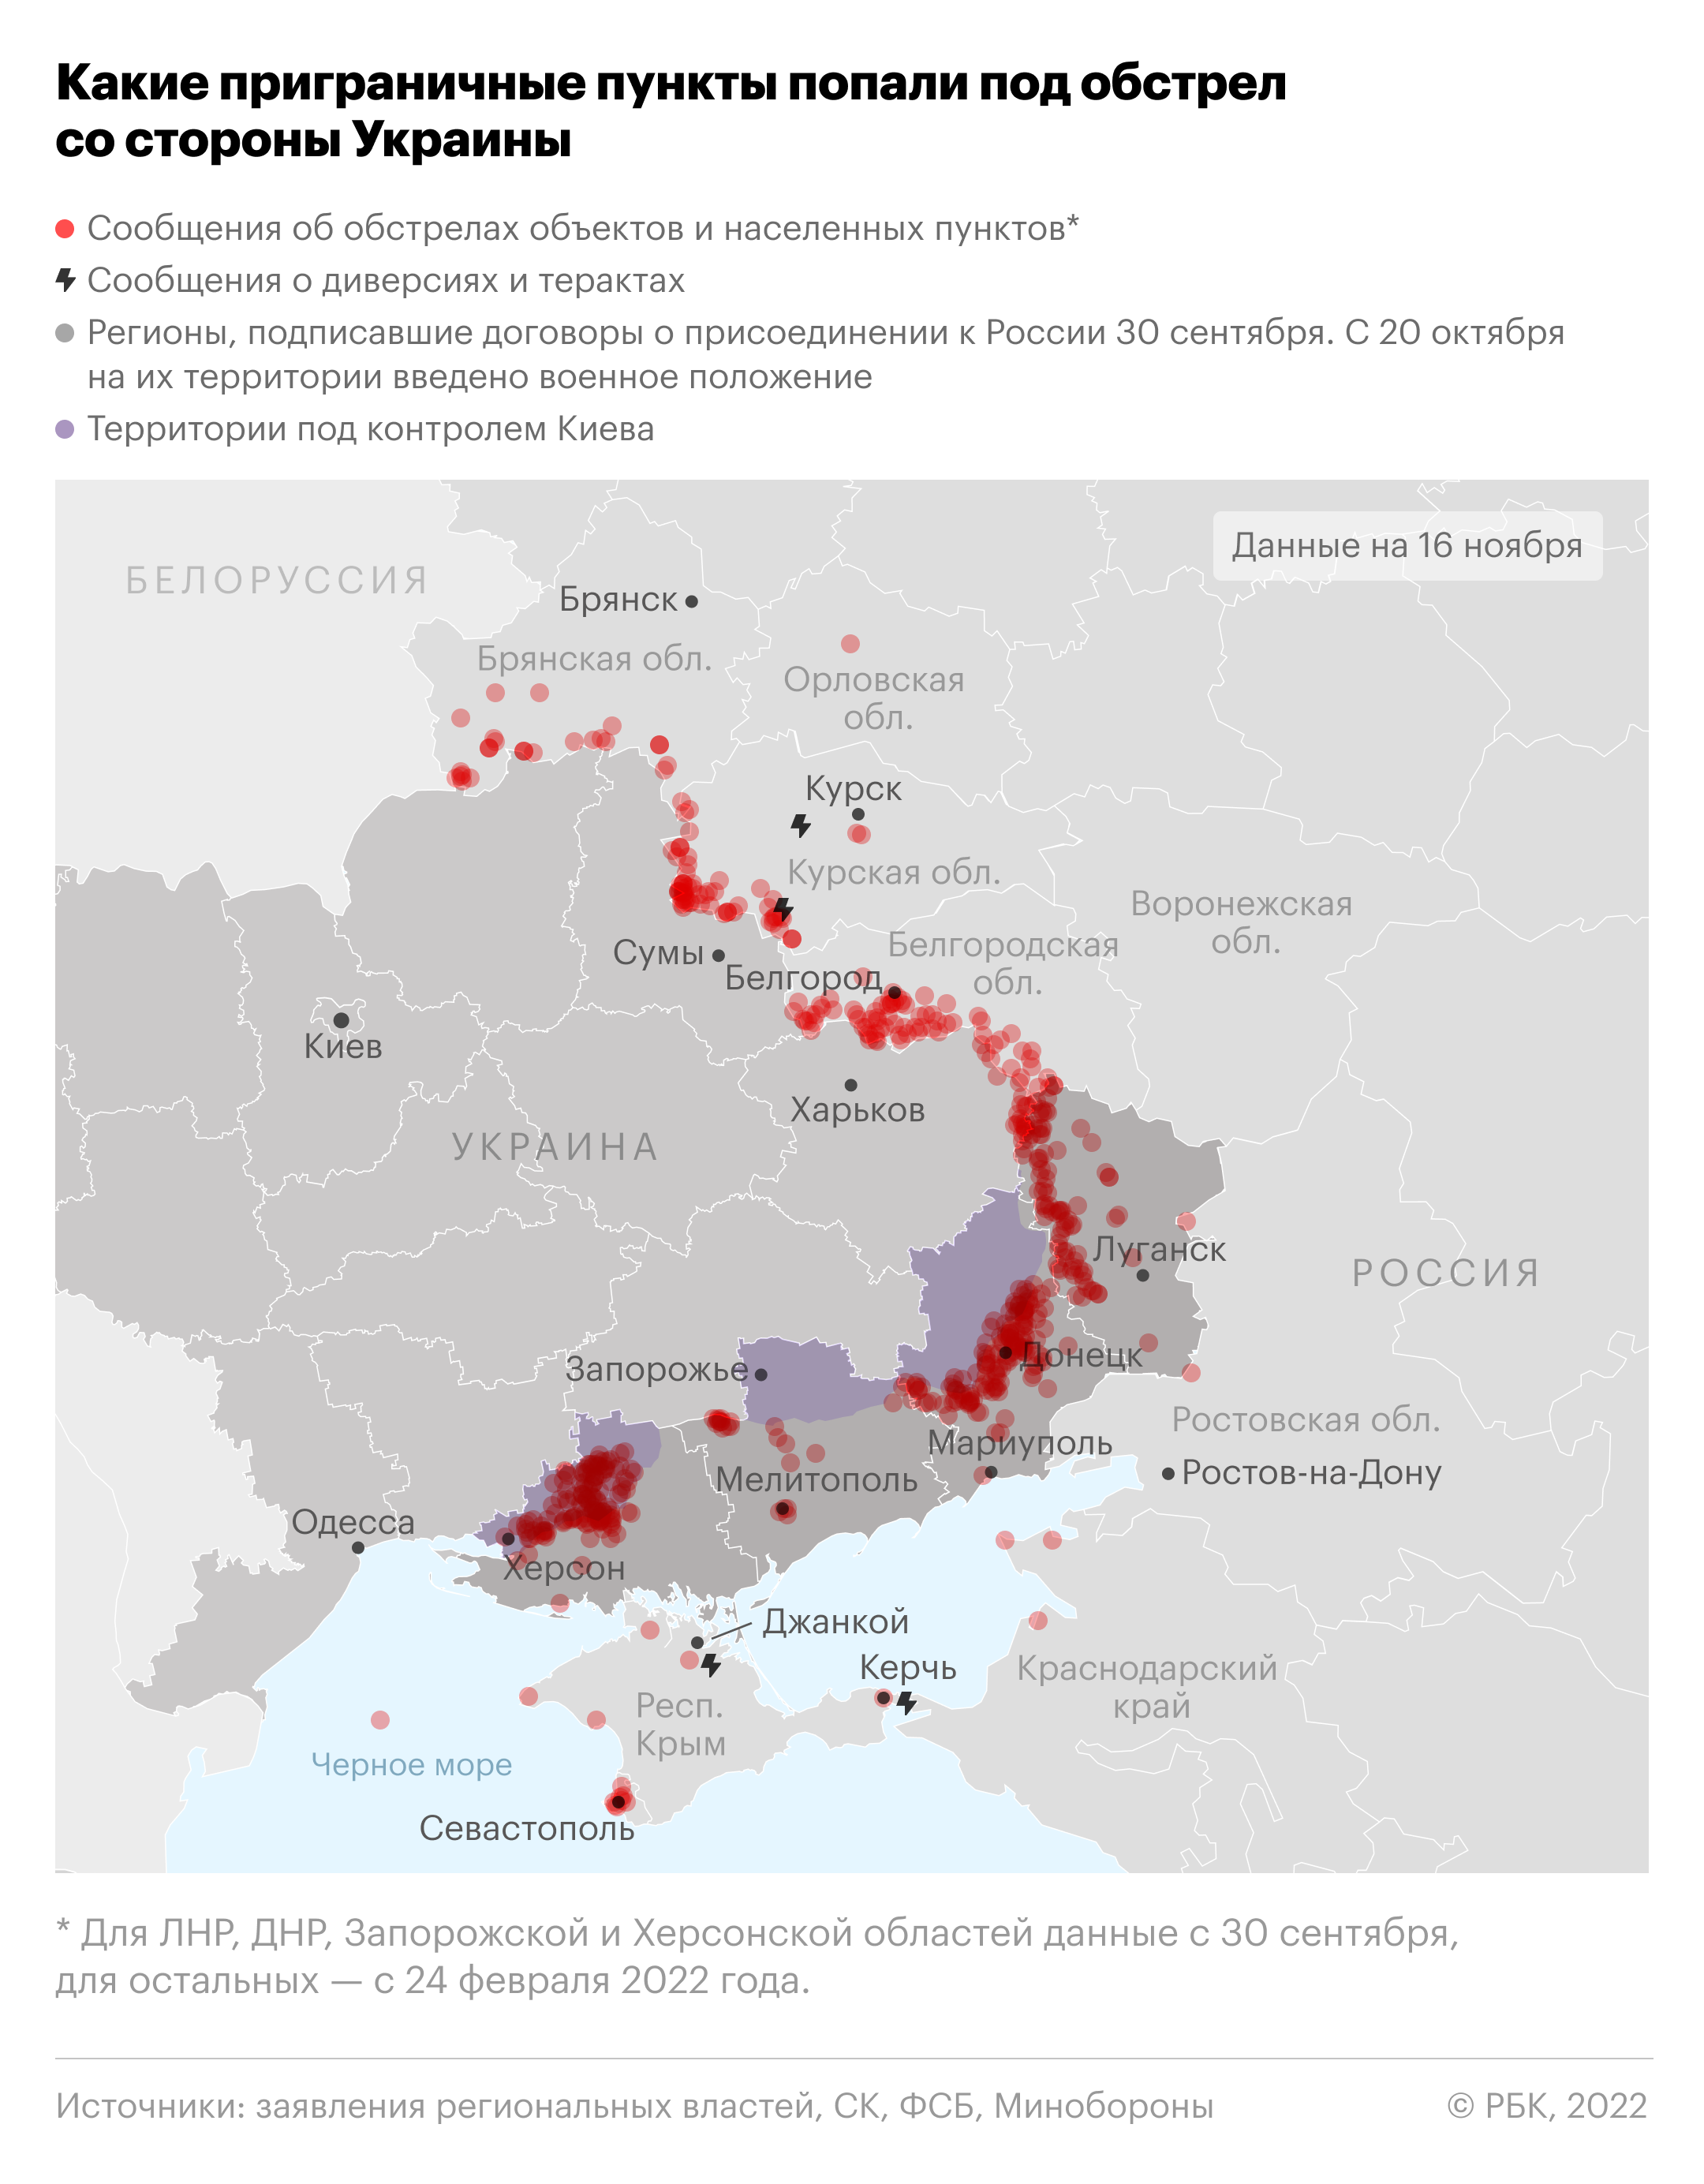 В ДНР сообщили об обстреле Донецка десятью снарядами"/>













